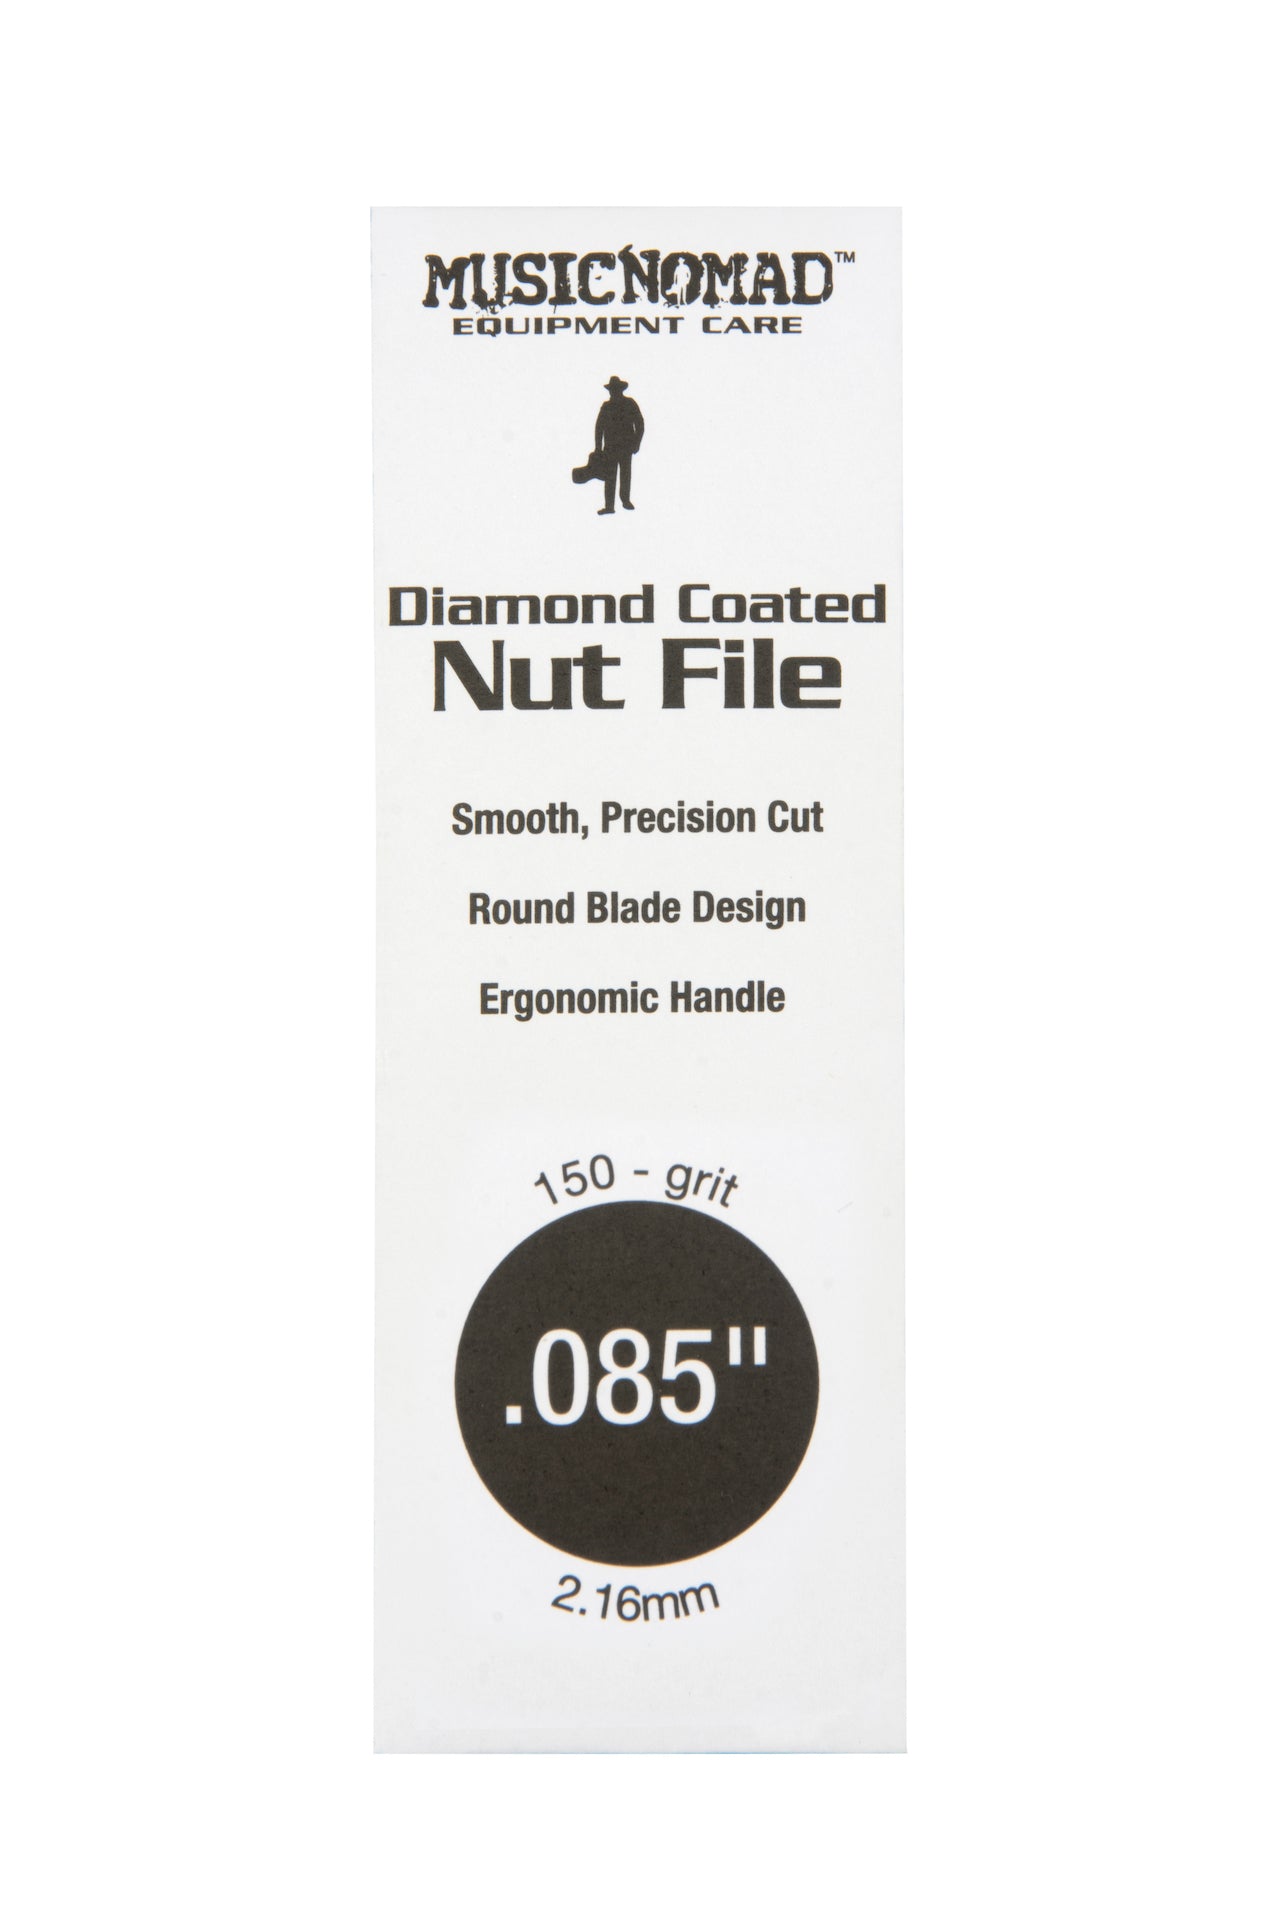 Music Nomad Diamond Coated Nut File Singles - HIENDGUITAR .085" .085" musicnomad musicnomad